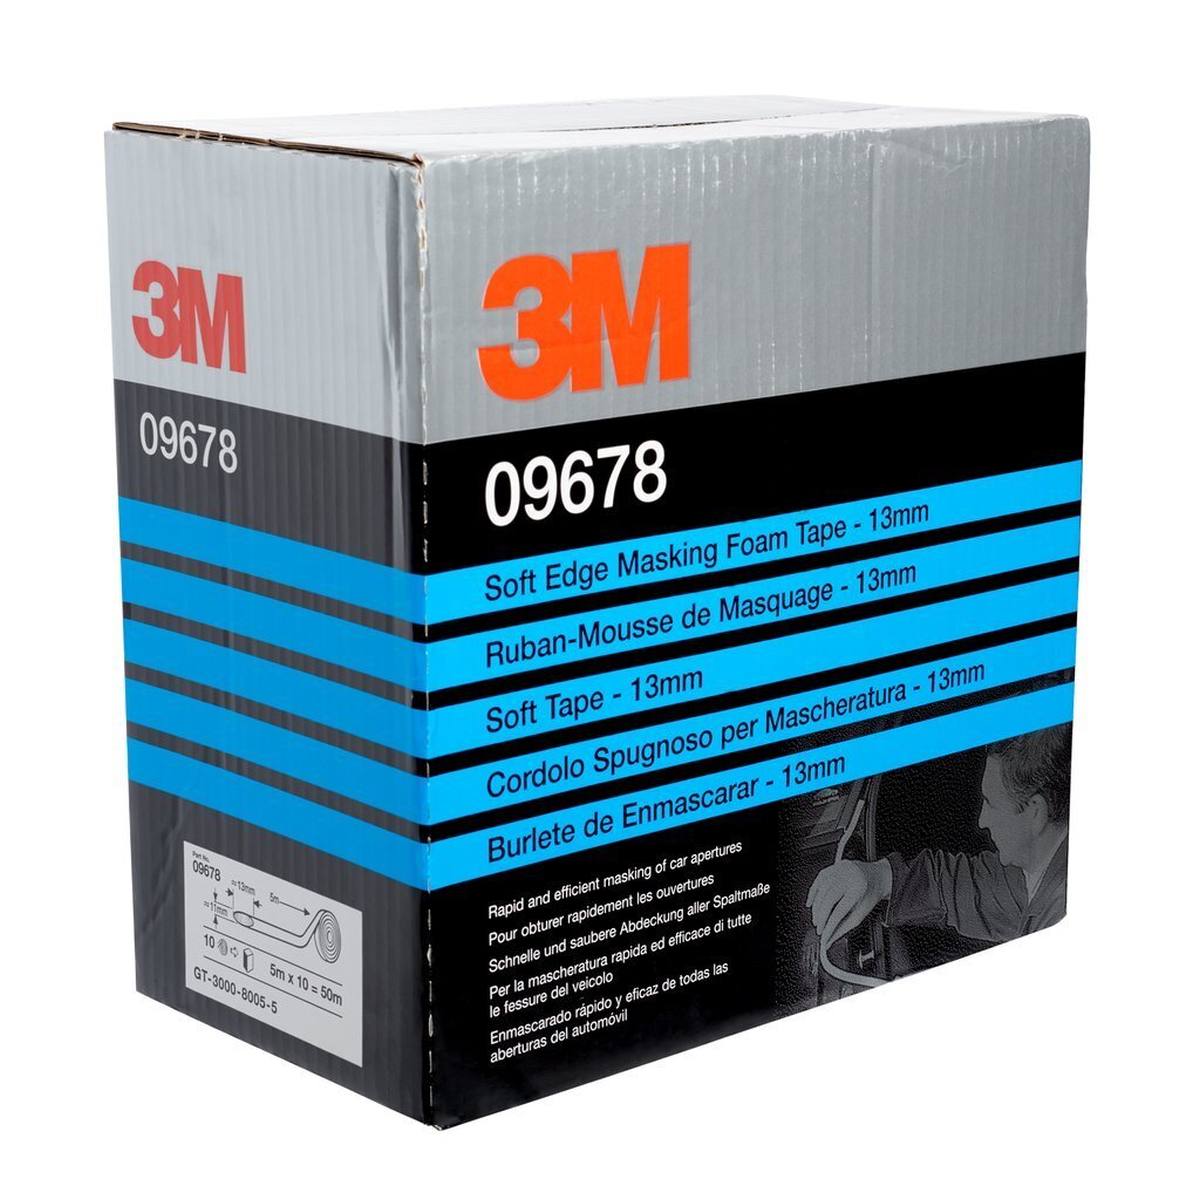 3M Soft Edge Foam masking tape, white, 13 mm x 50 m, 09678